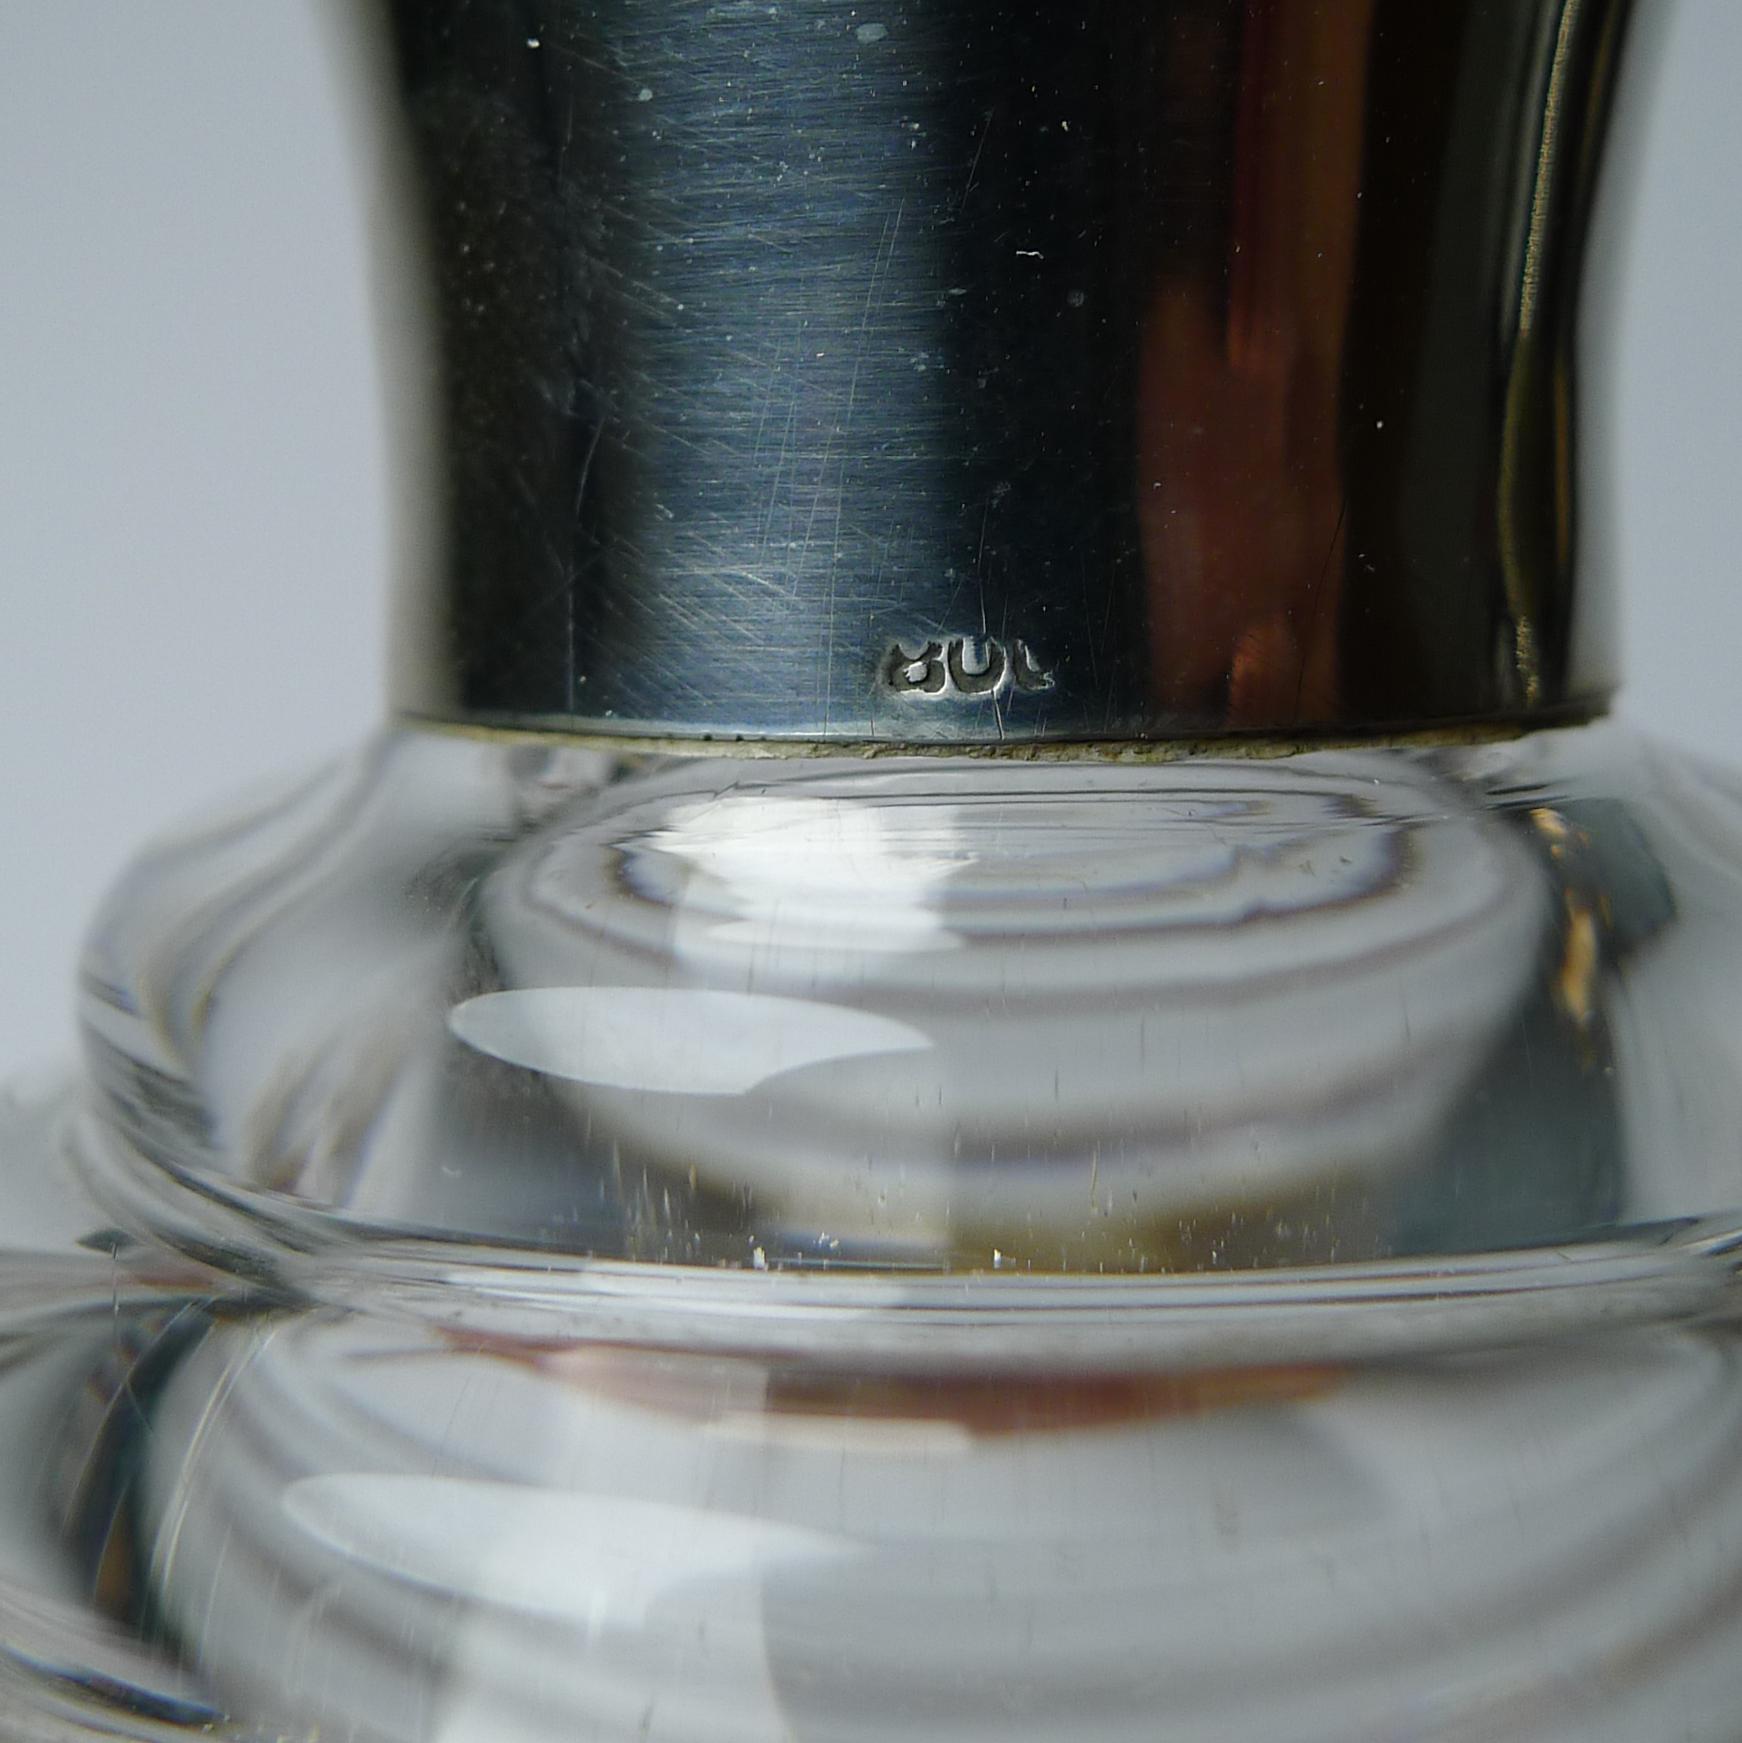 Une étonnante carafe à liqueur Art Déco en verre transparent avec un couvercle en argent massif (argent continental 800) estampillé 800.

Complet avec les six verres à shot originaux. La carafe et l'un des verres conservent les étiquettes de prix